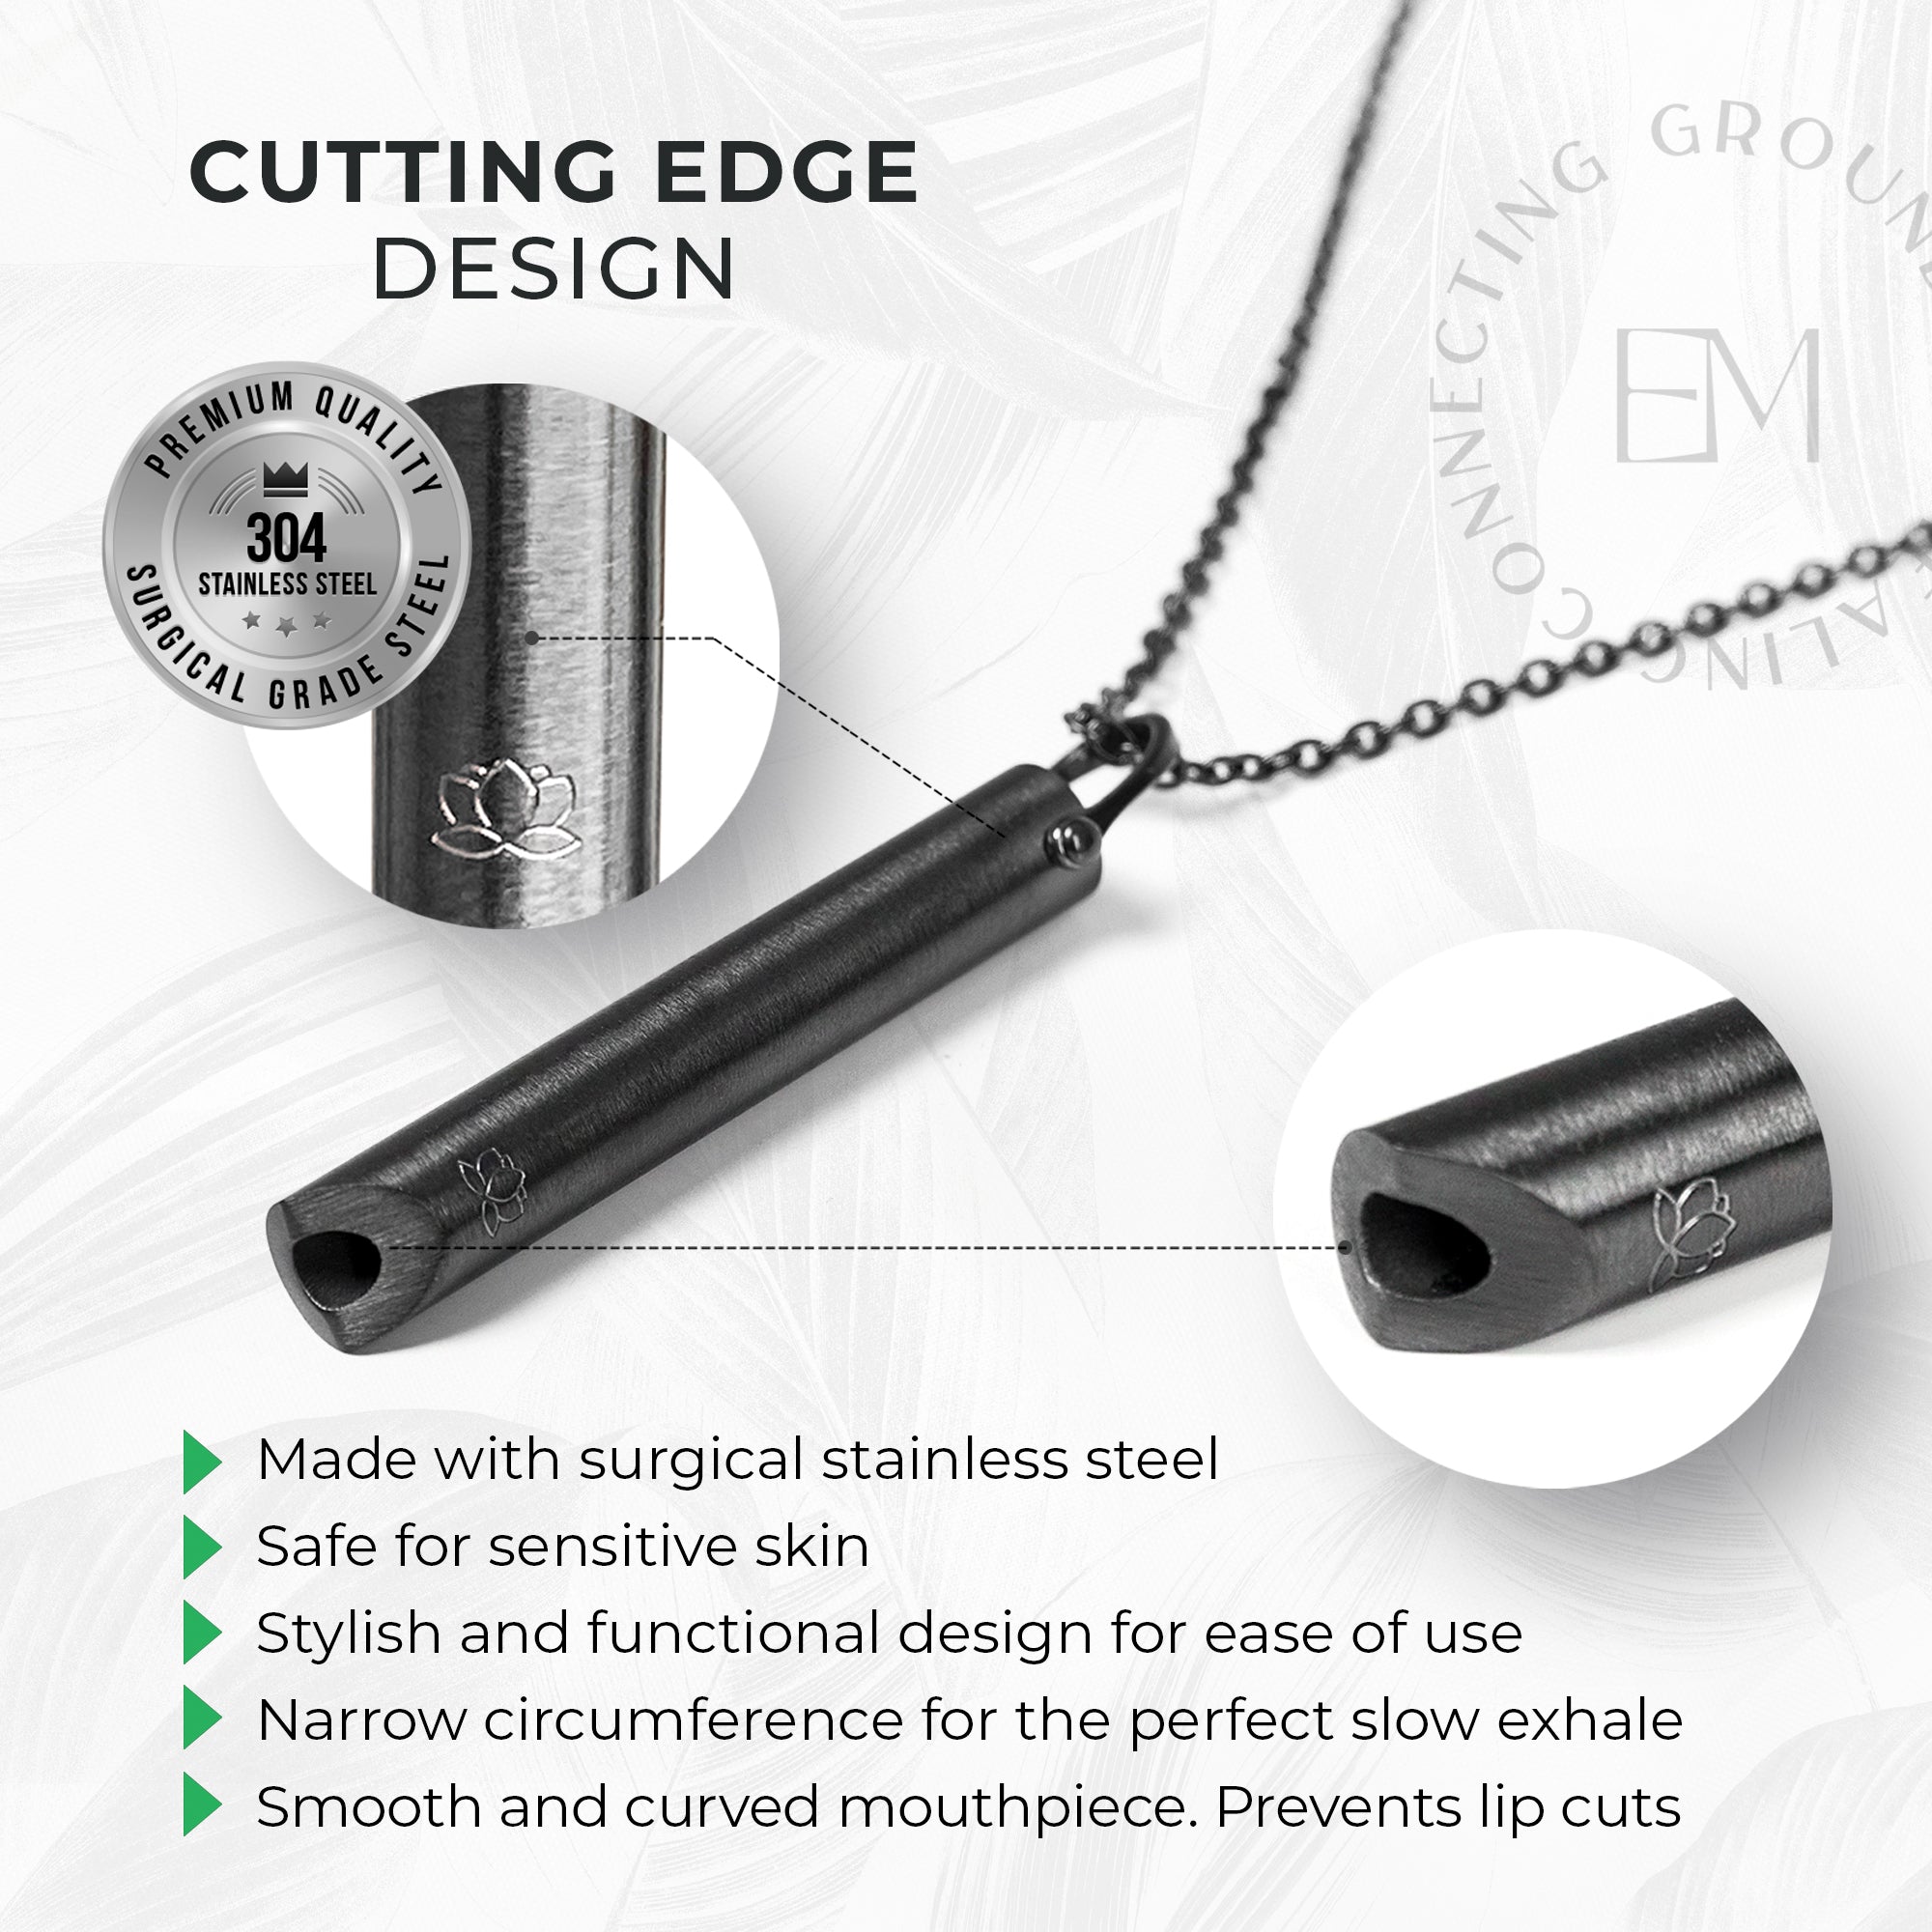 Cutting edge design